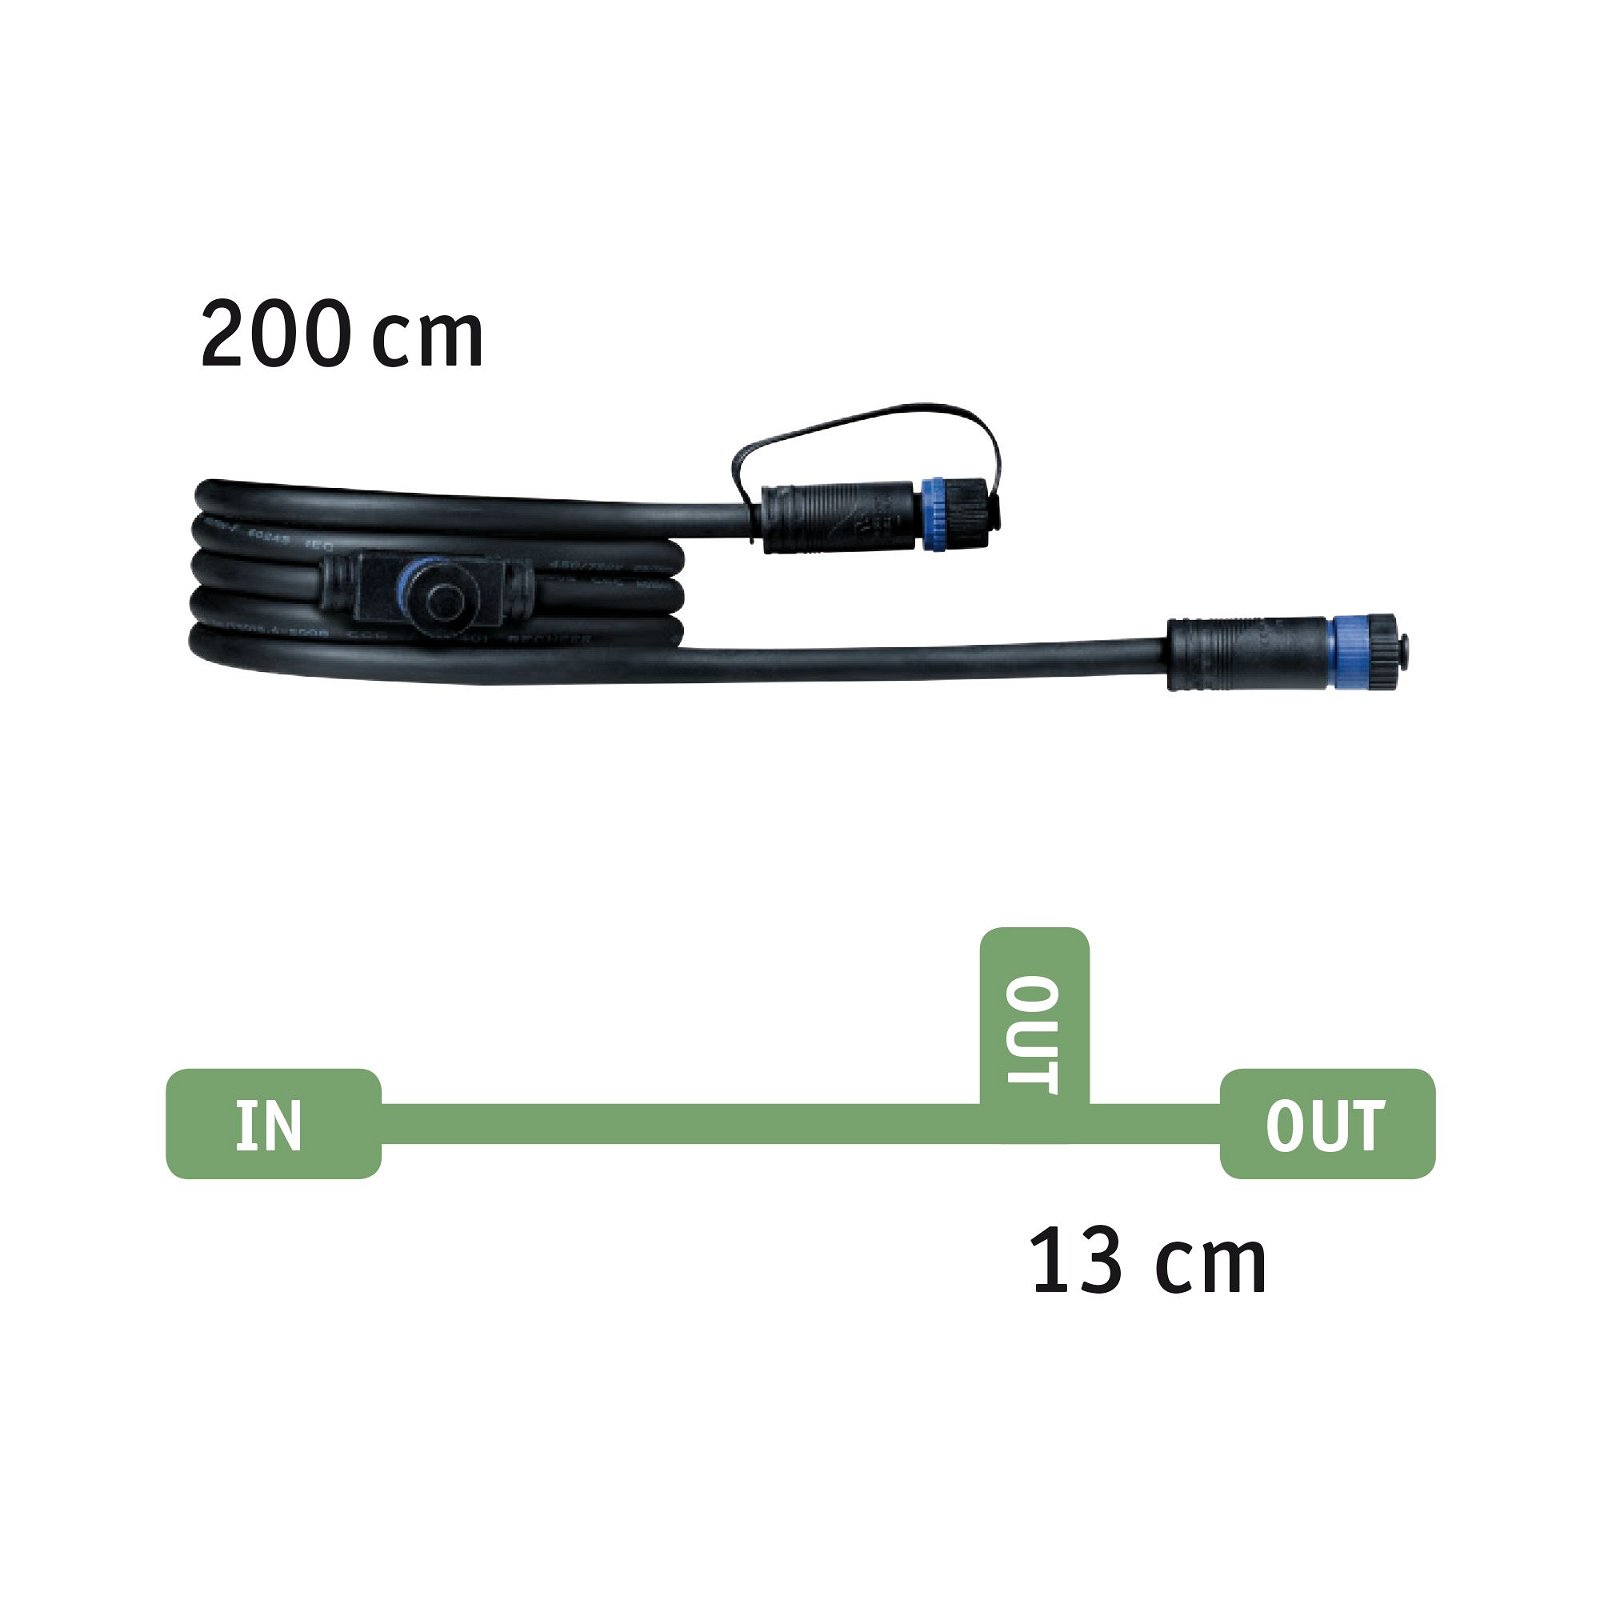 Plug & Shine Bundle LED lysobjekt Tree inkl. 2m kabel og transformer IP67 3000K 2,8W Hvid